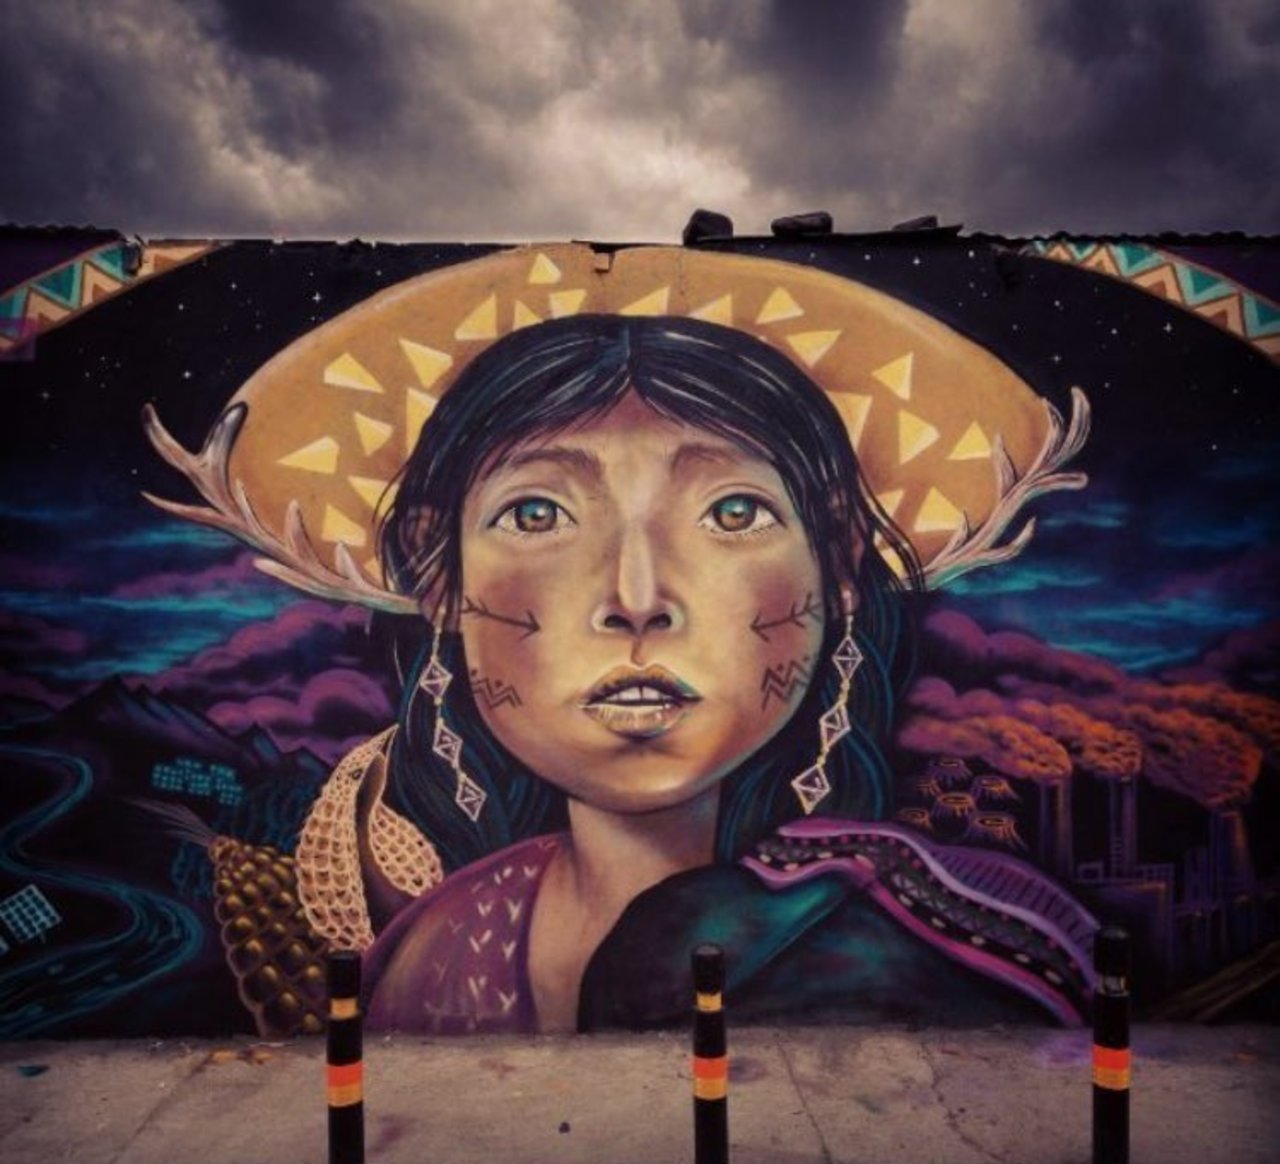 #mural by Knorke_leaf #Bolivia#art #graffiti #streetart https://t.co/PfcrahPHMV